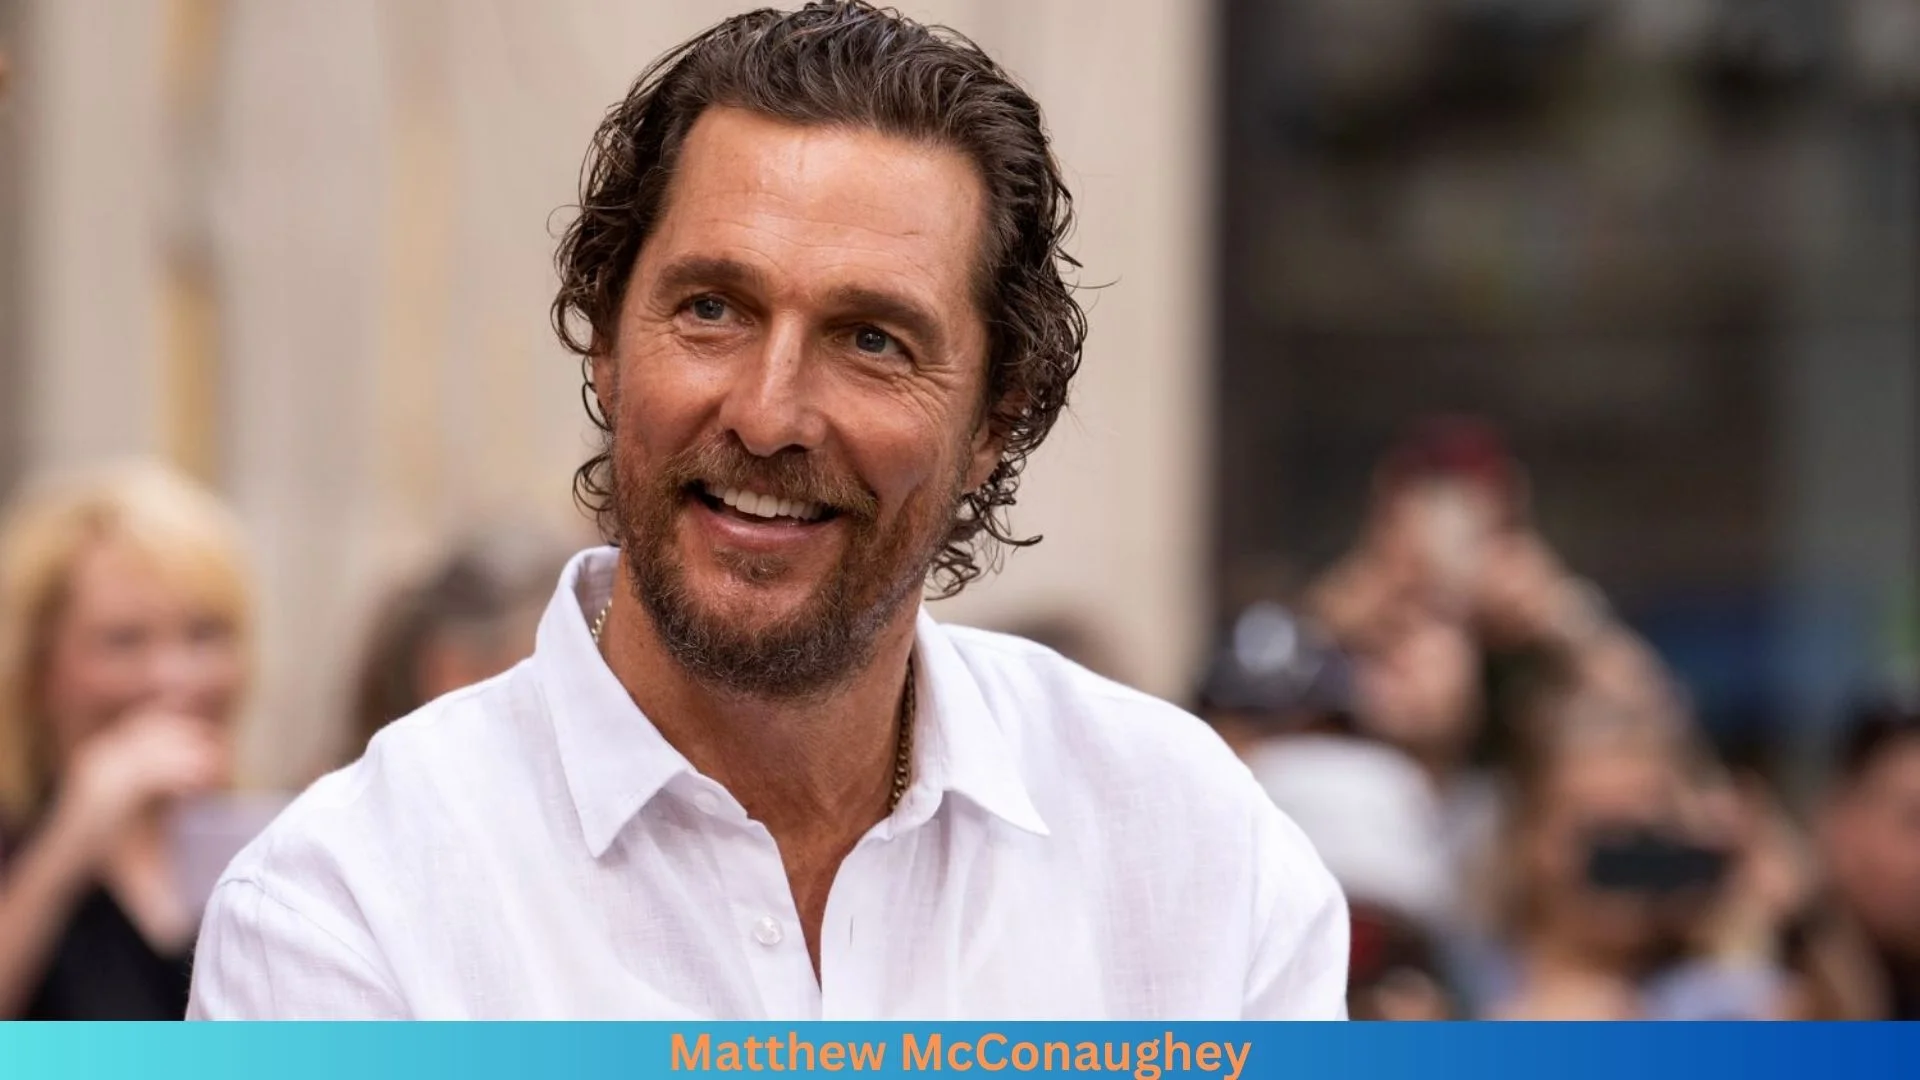 Net Worth of Matthew McConaughey